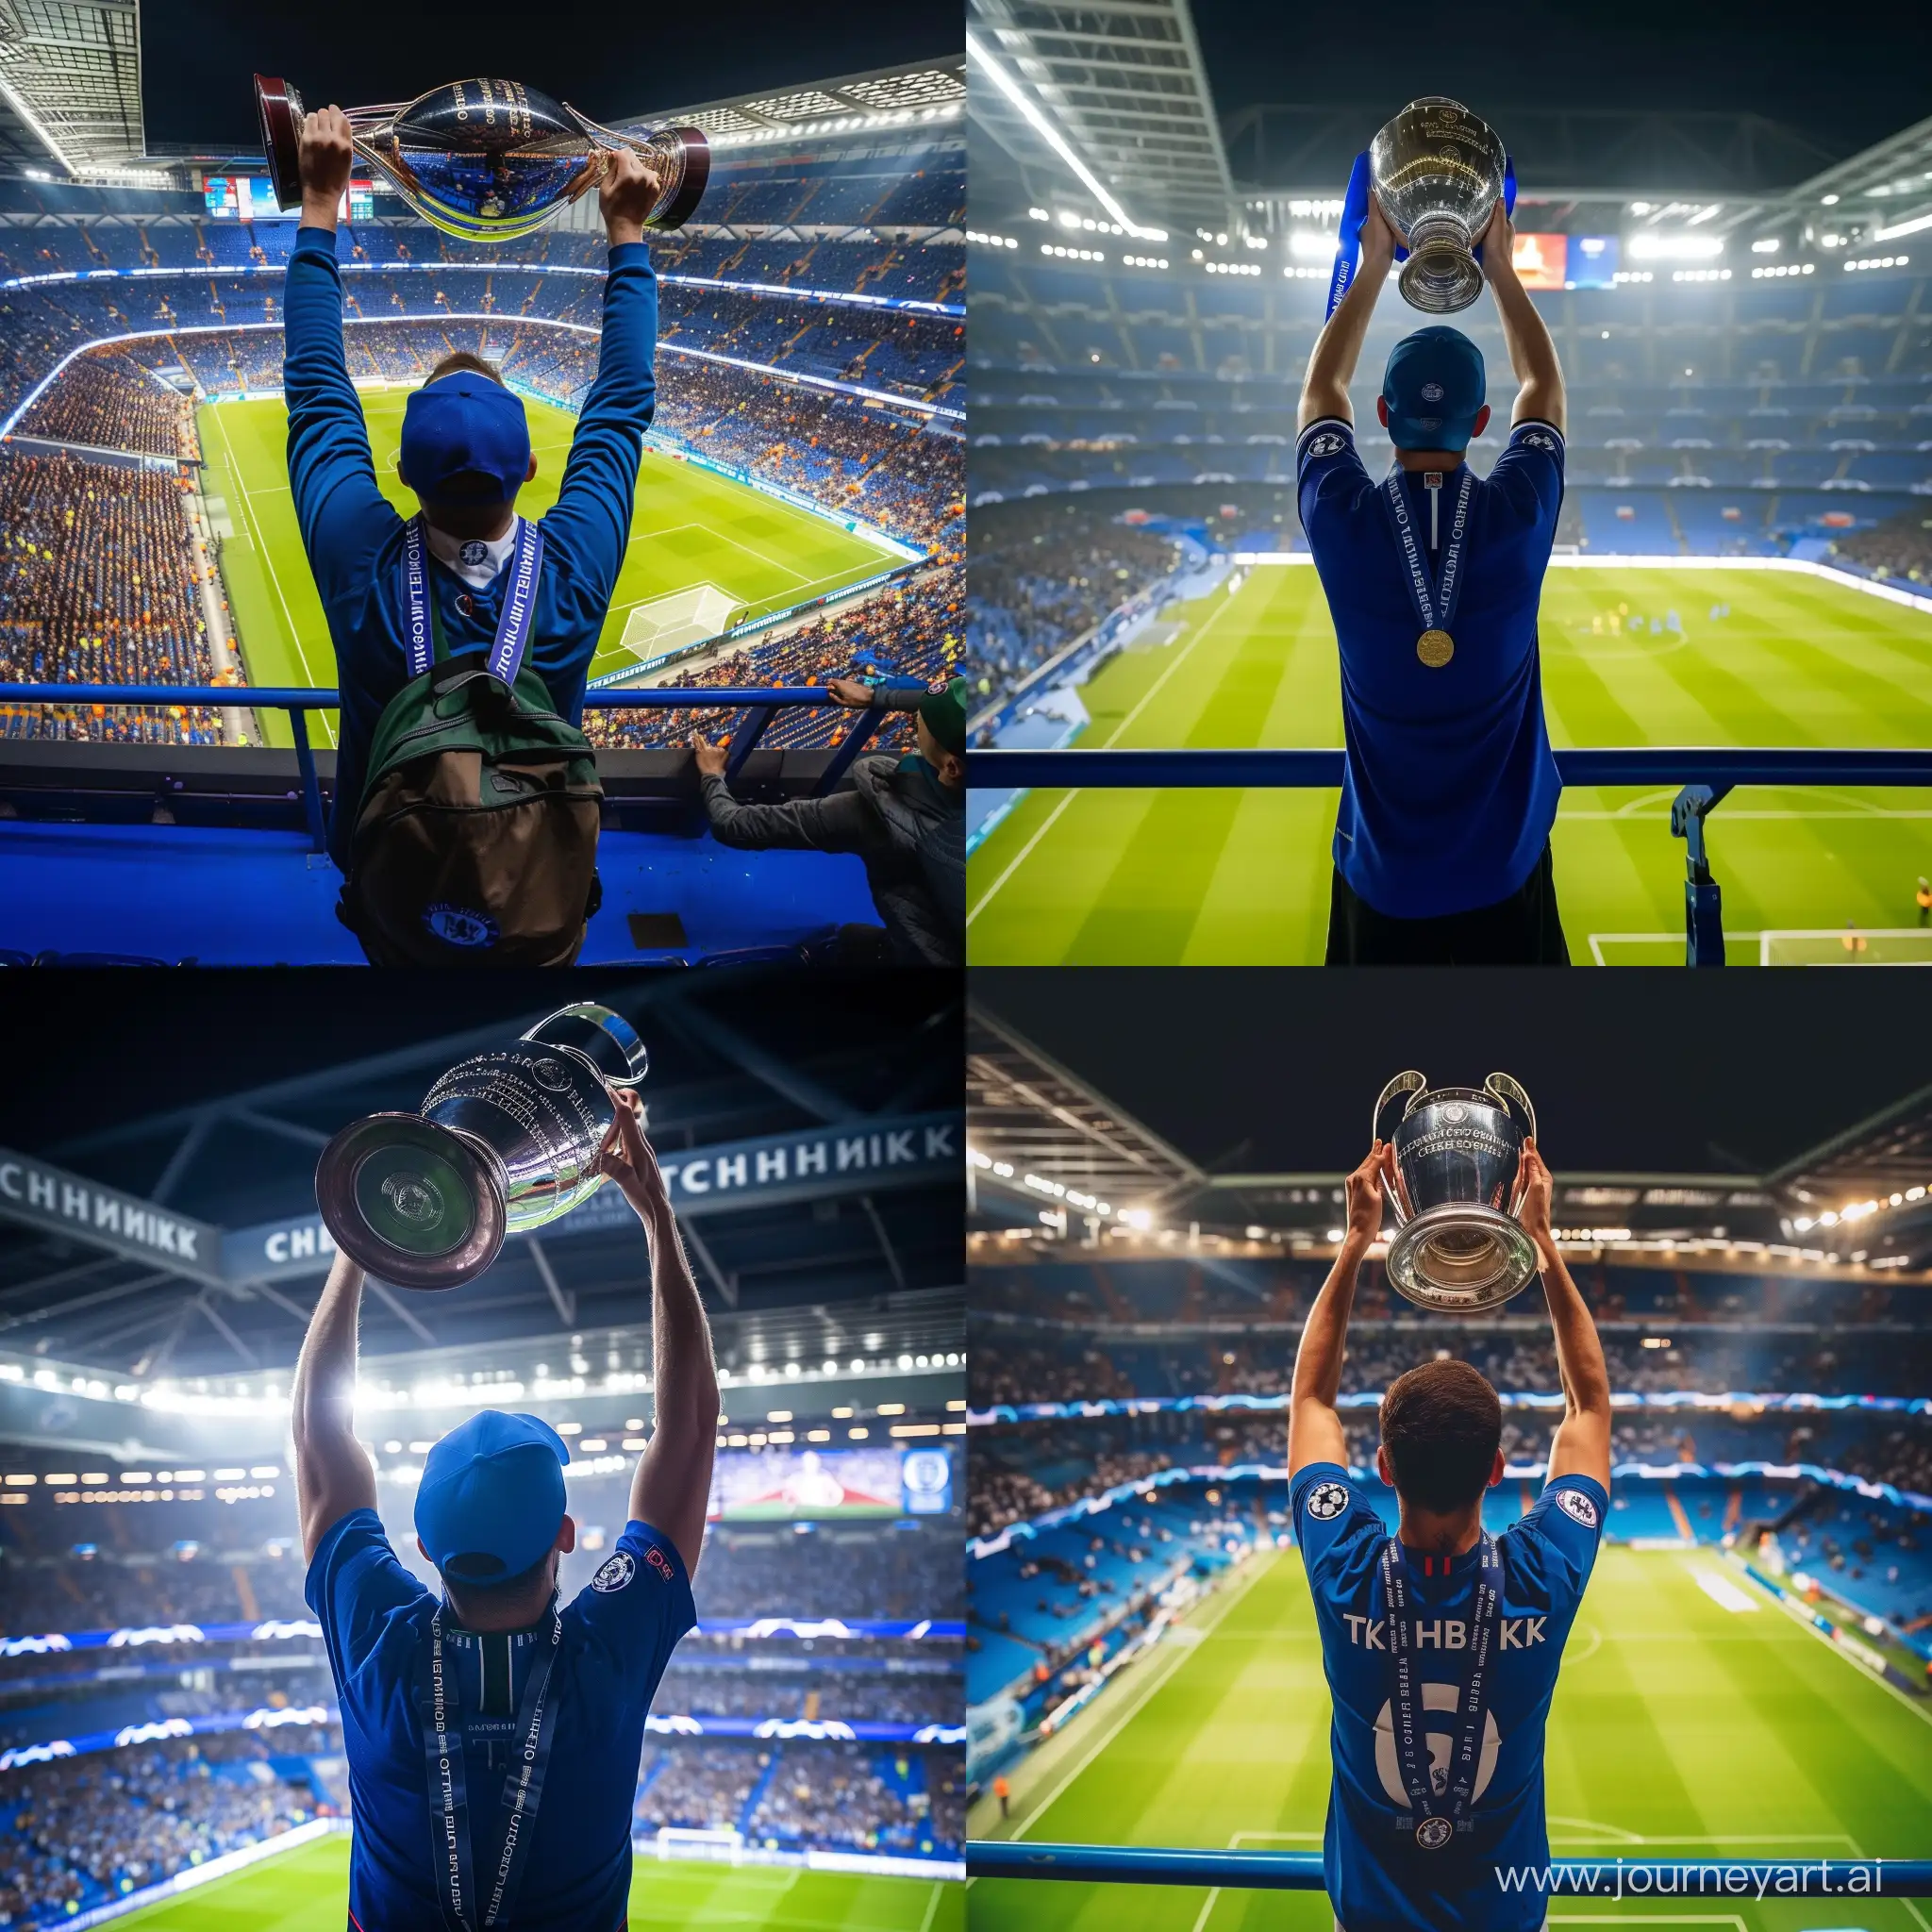 Паша Техник фанат футбольного клуба Челси, стоит на стадионе и поднимает над головой кубок лиги чемпионов
